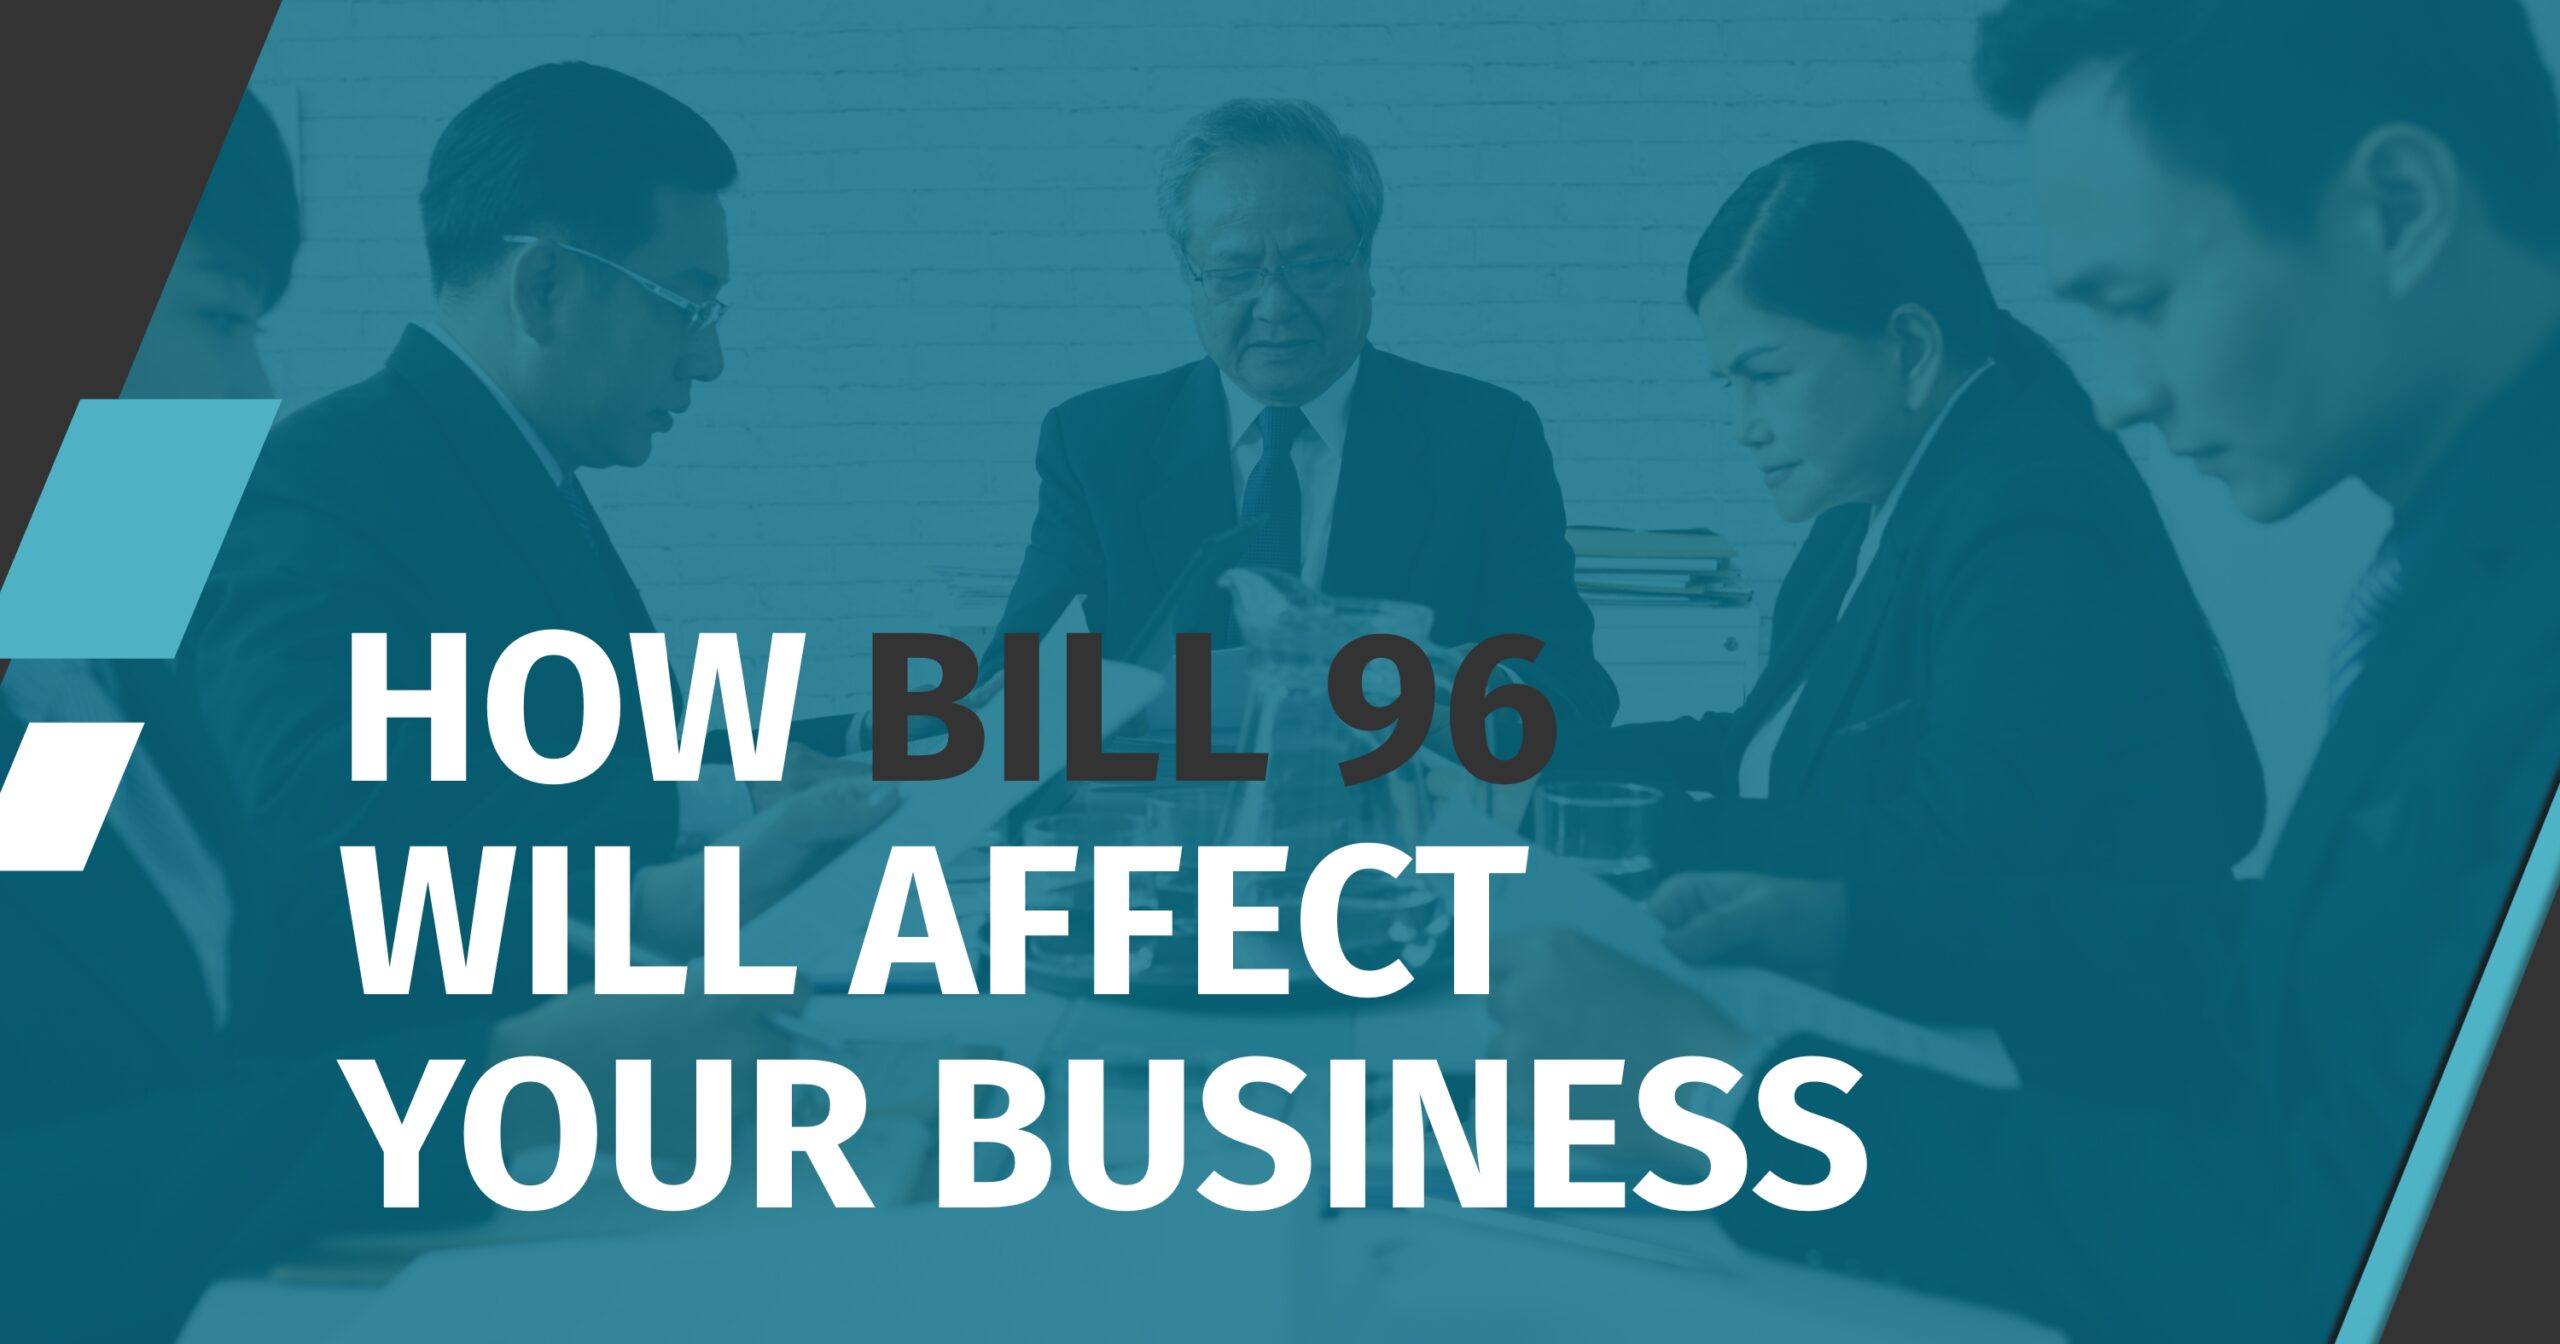 Bill 96